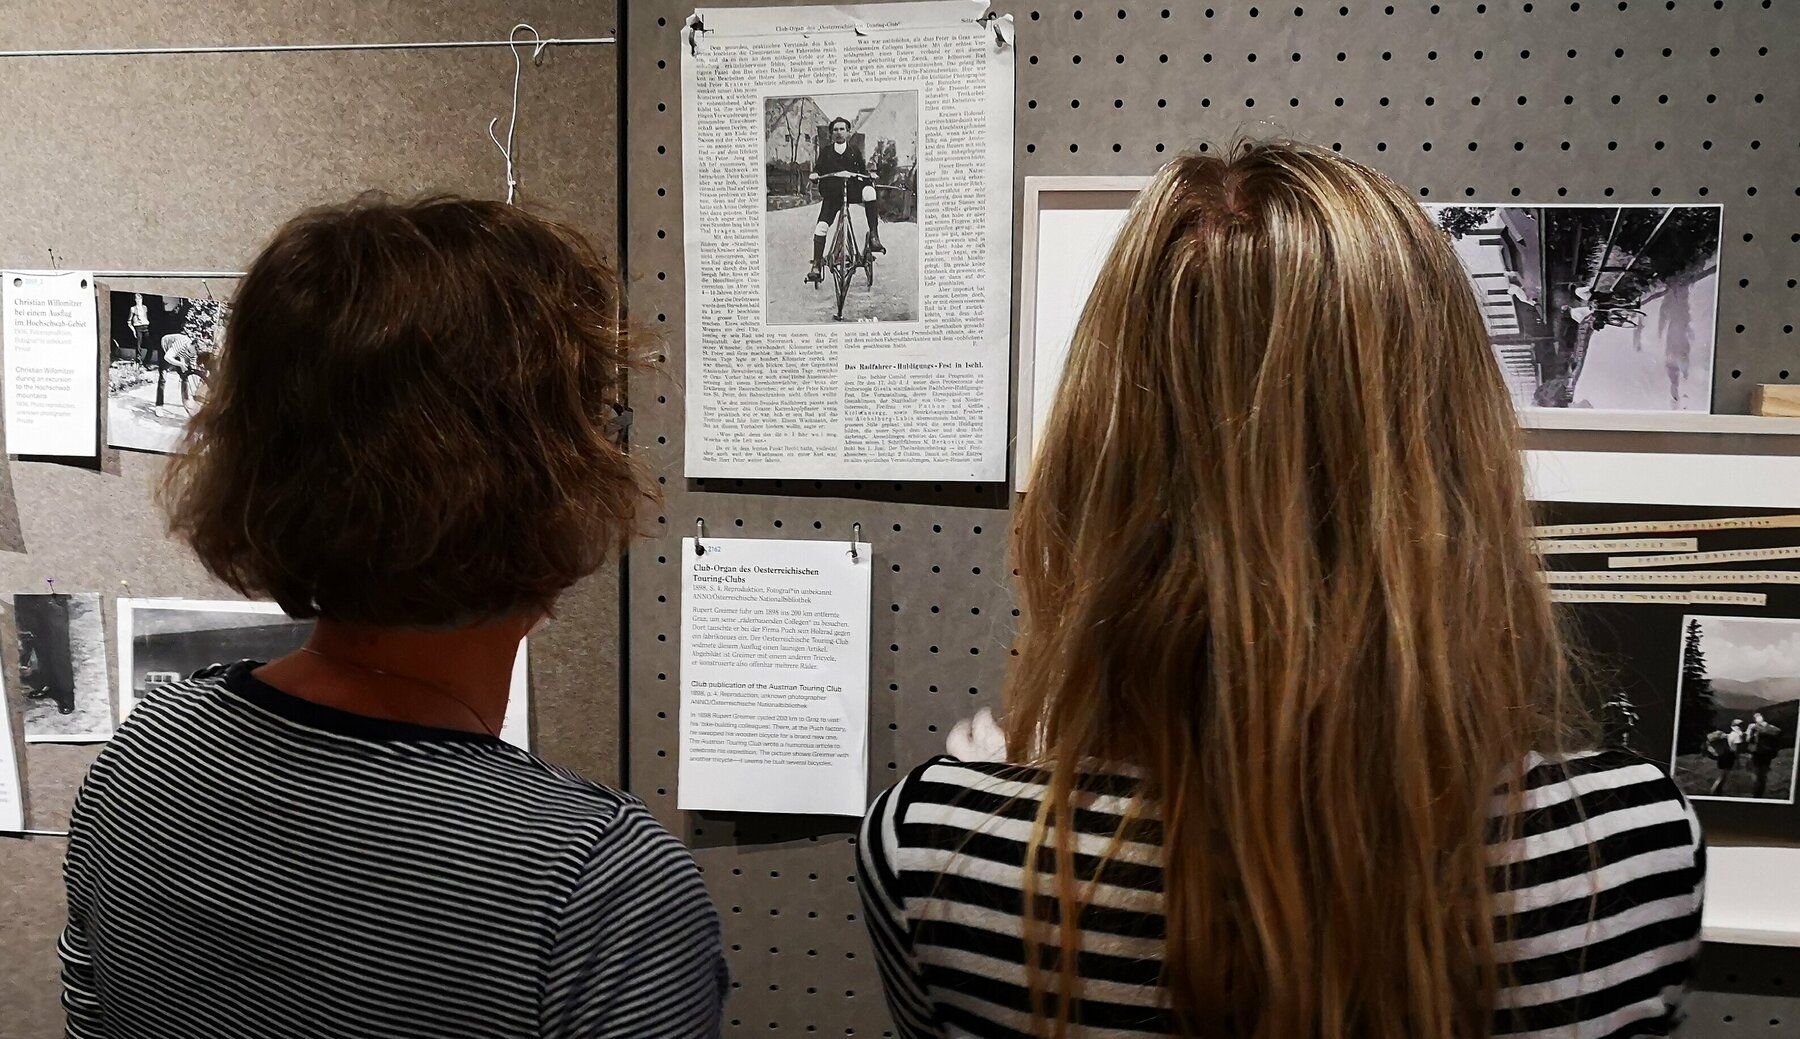 Zwei Kolleginnen prüfen vom Betrachter abgewandt die Anordnung von Ausstellungsexponaten